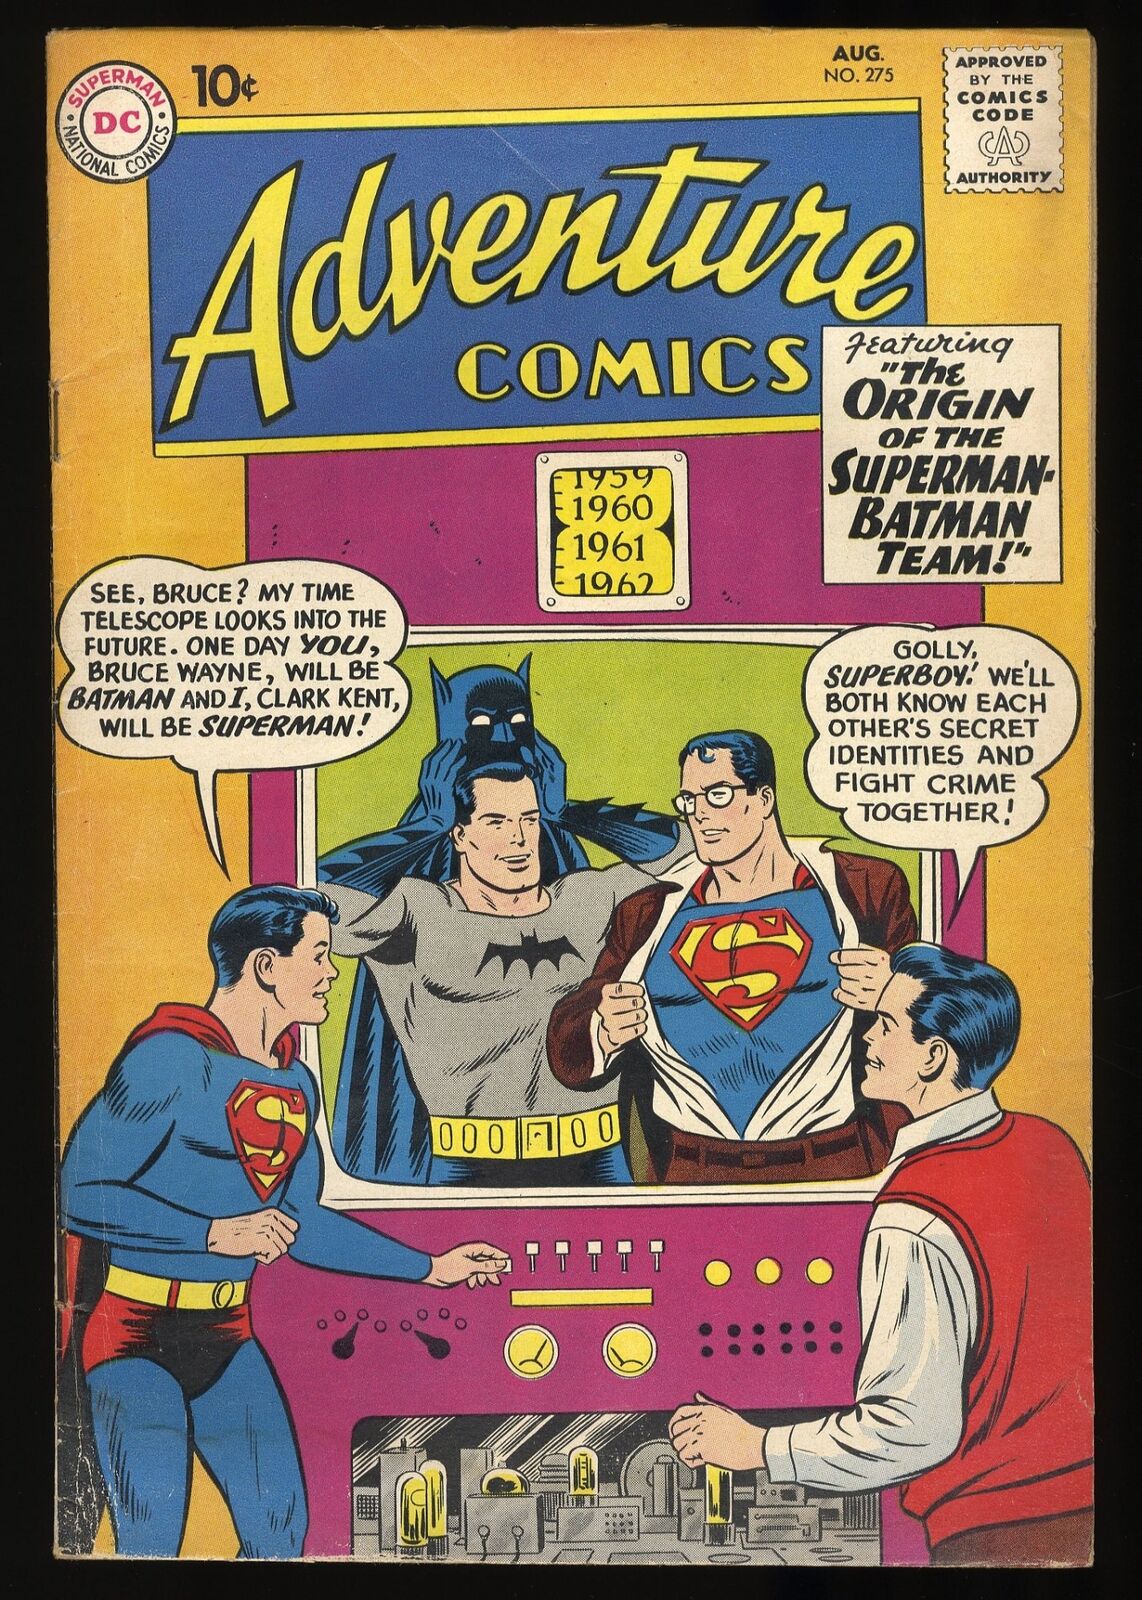 Adventure Comics #275 VG+ 4.5 Superman Batman Team Origin DC Comics 1960